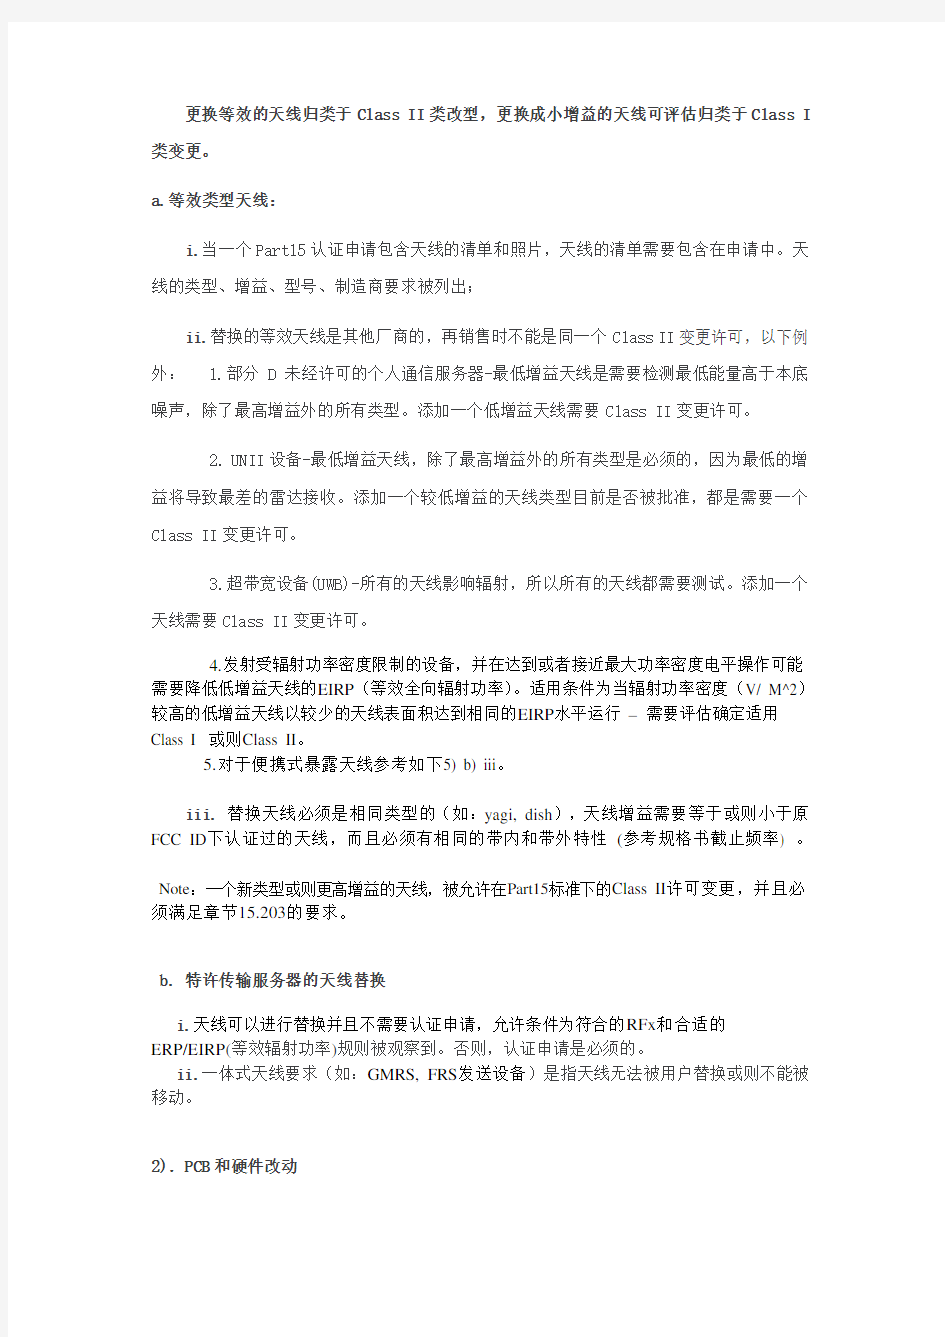 KDB178919 Permissive change(变更许可)中文总结